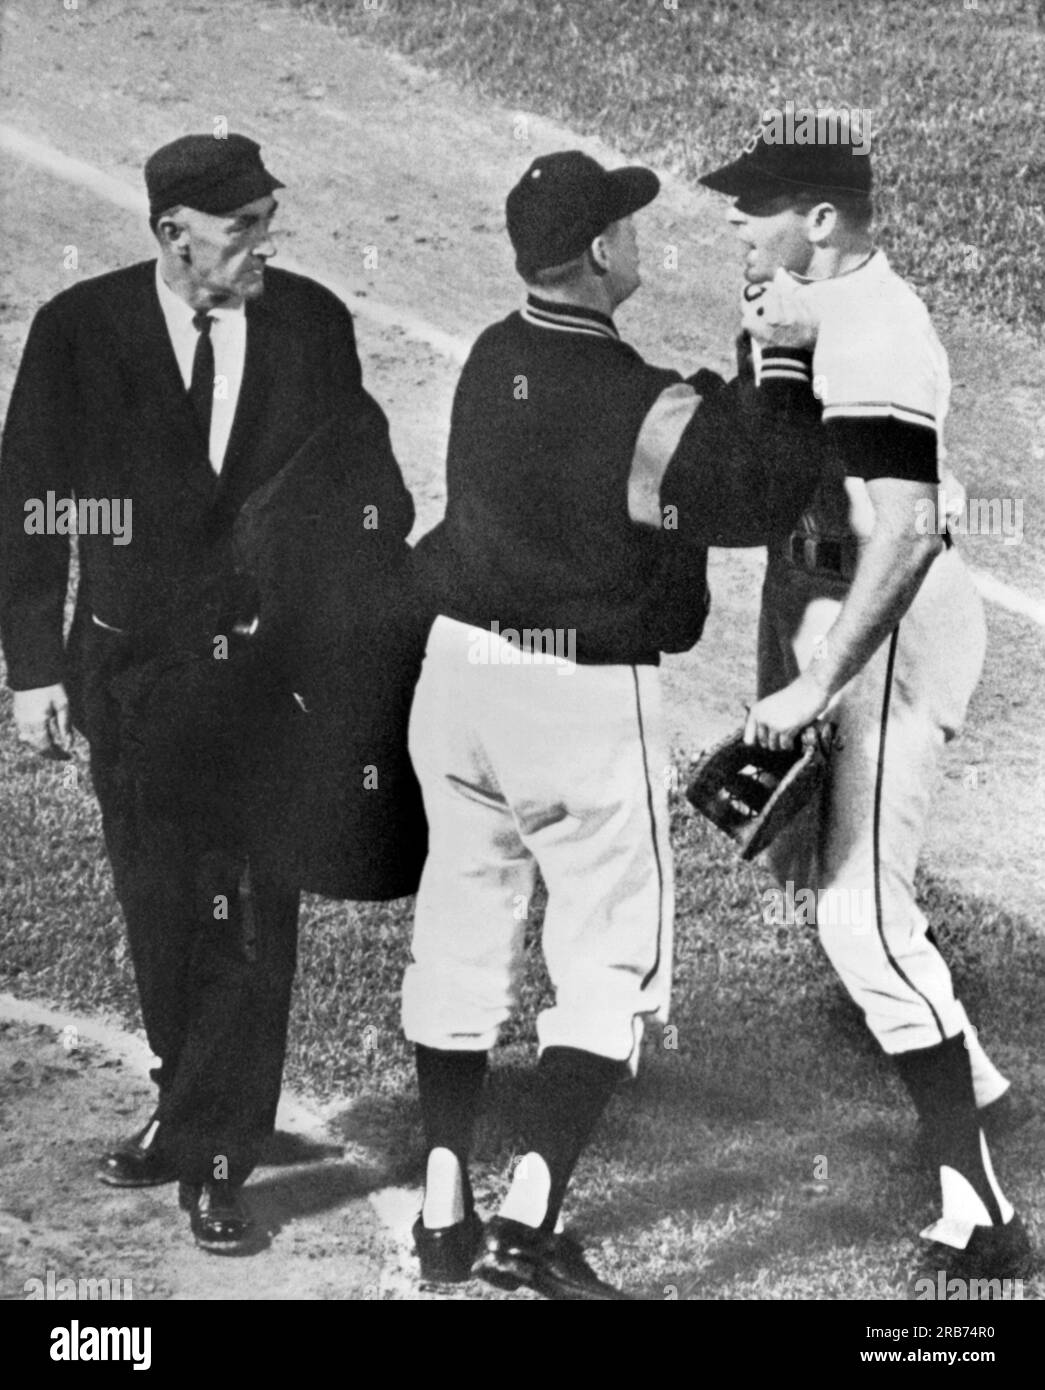 Baltimora, Maryland: Maggio 1963 il primo base di Baltimora Jim gentile viene collassato dal suo manager Billy Hitchcock mentre si carica verso l'arbitro ed Runge dopo essere stato espulso dalla partita. Foto Stock